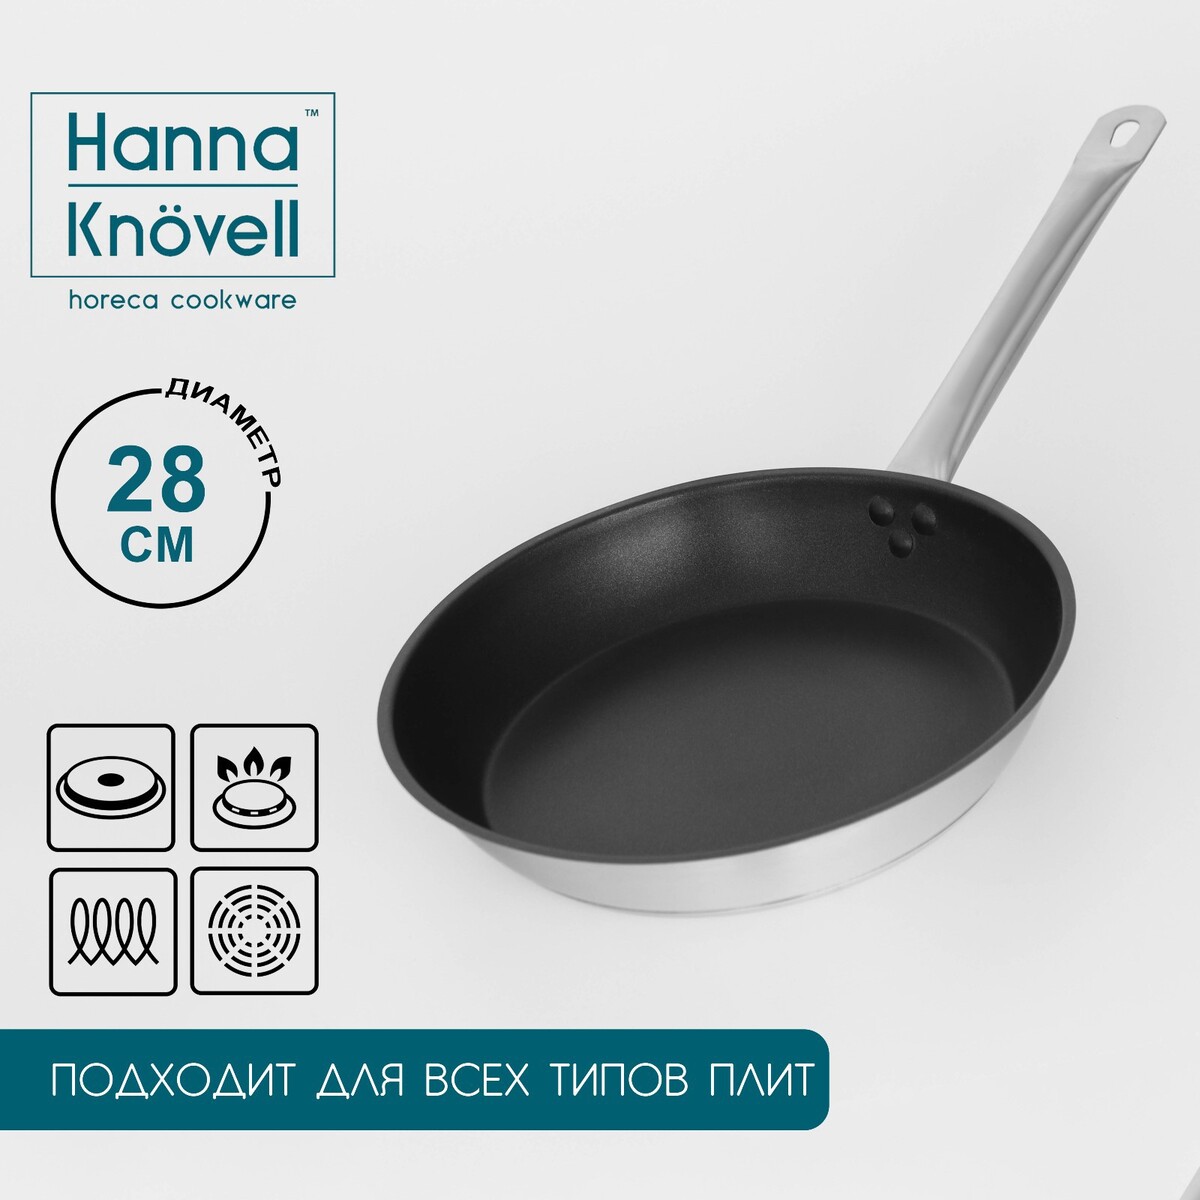 Сковорода из нержавеющей стали hanna knövell, d=28 см, h=5,5, толщина стенки 0,6 мм, длина ручки 25 см, антипригарное покрытие, индукция